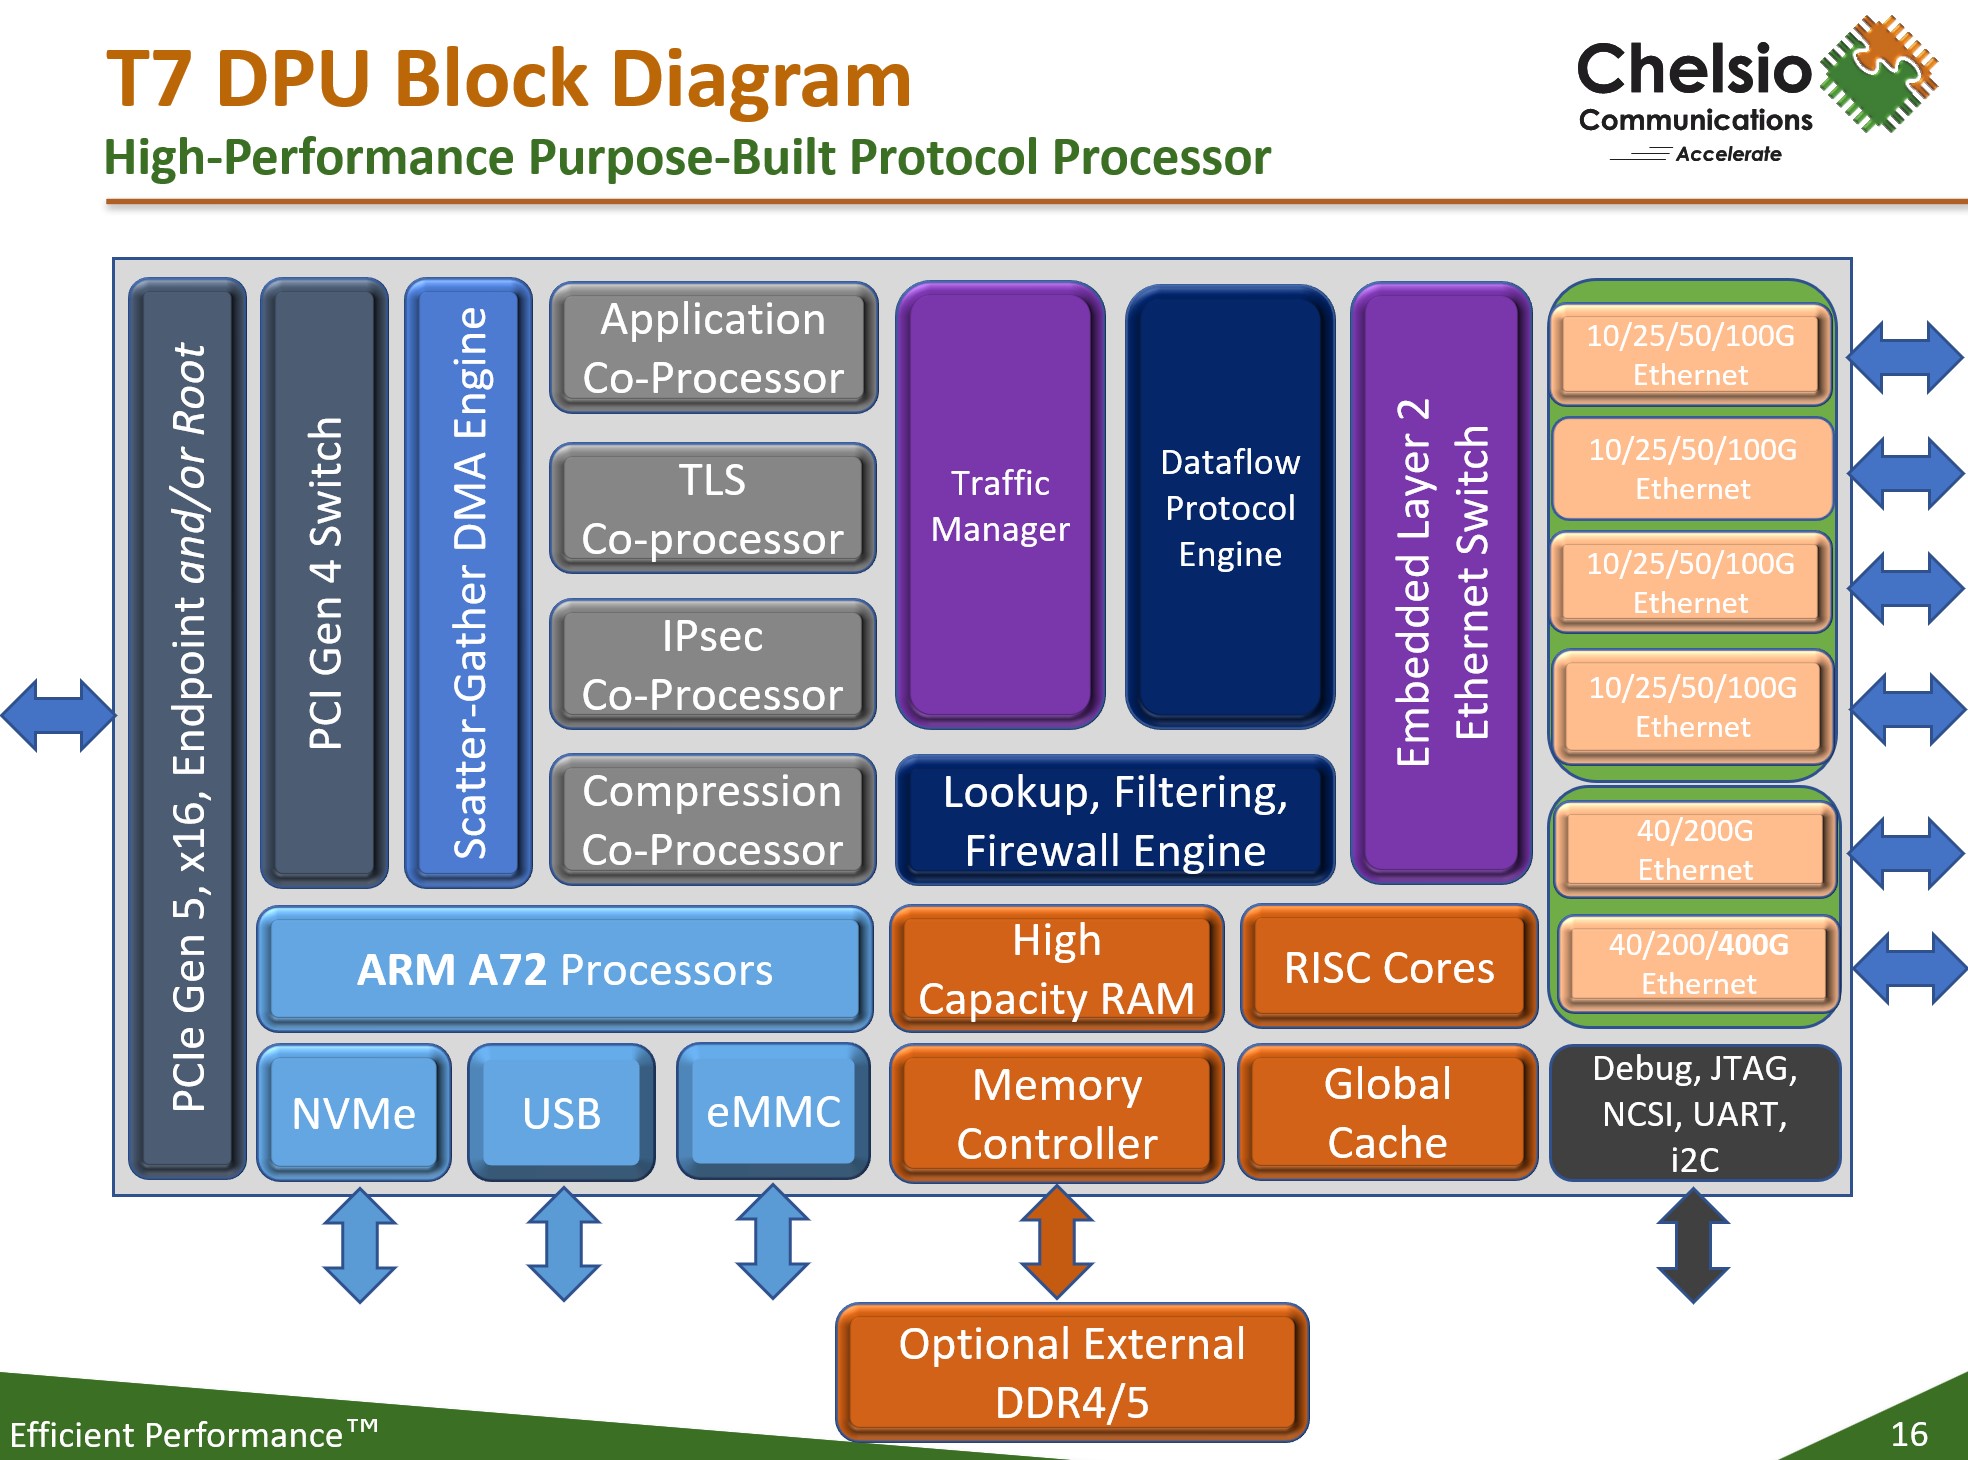 Chelsio D7 DPU Block Diagram